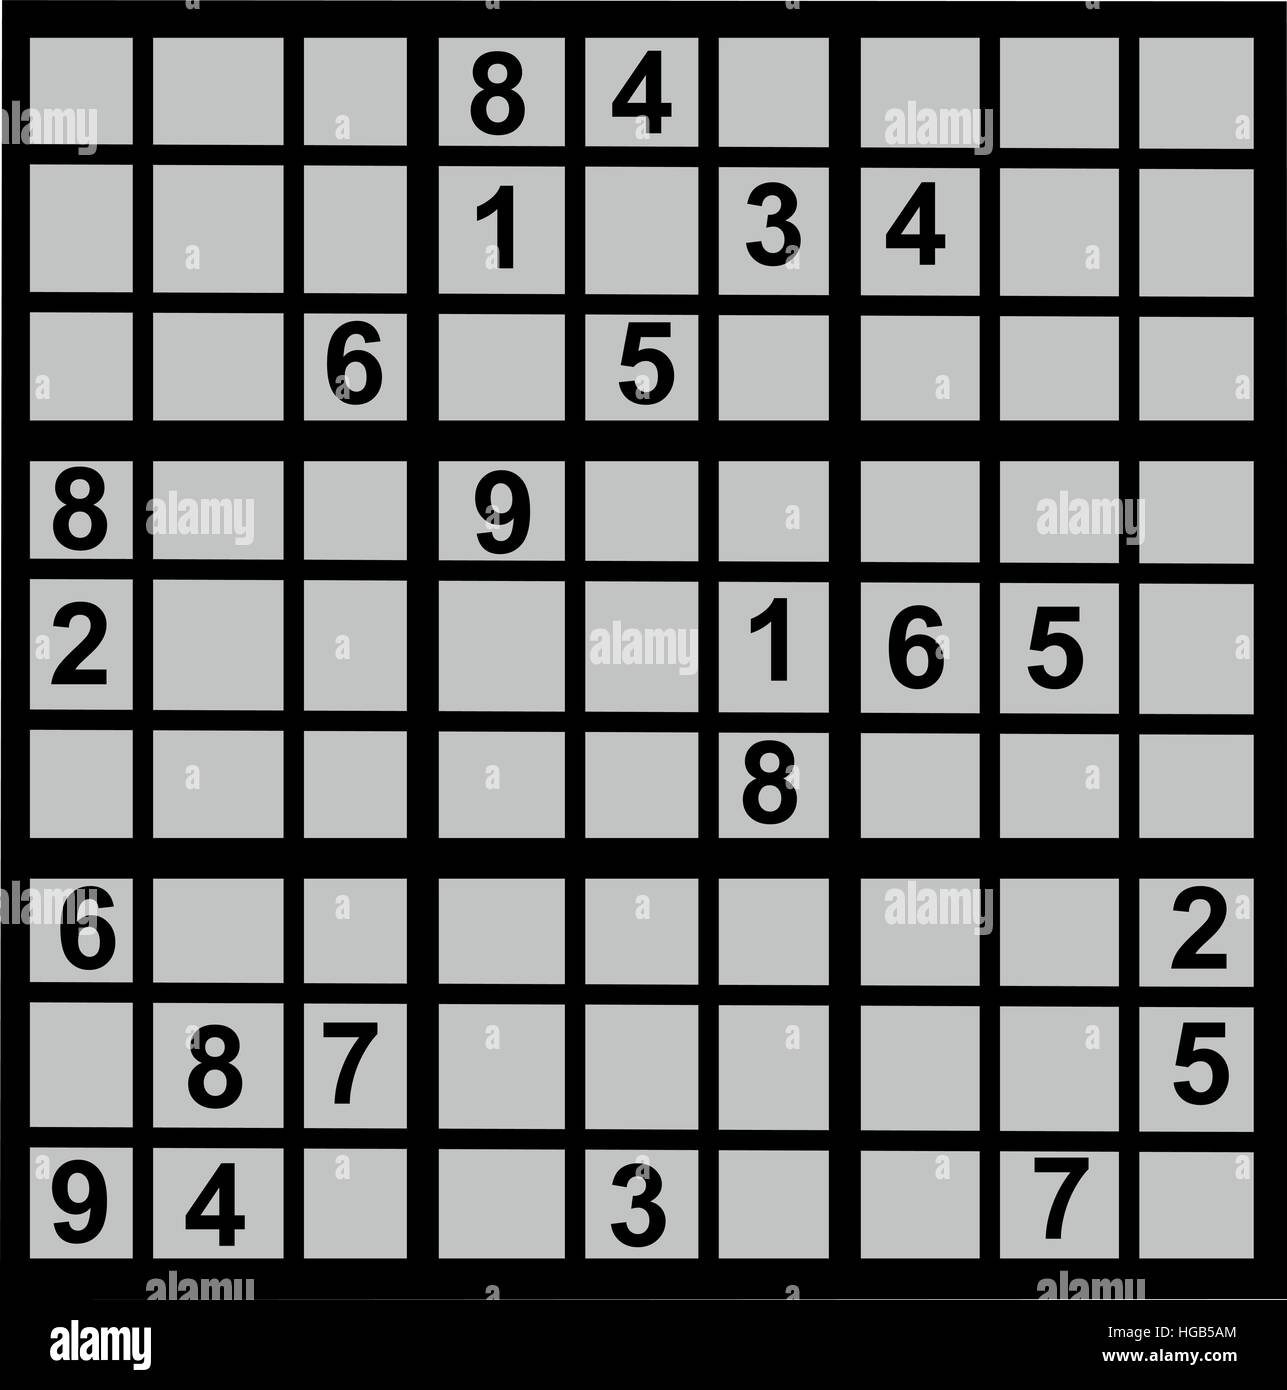 Sudoku game Stock Vector